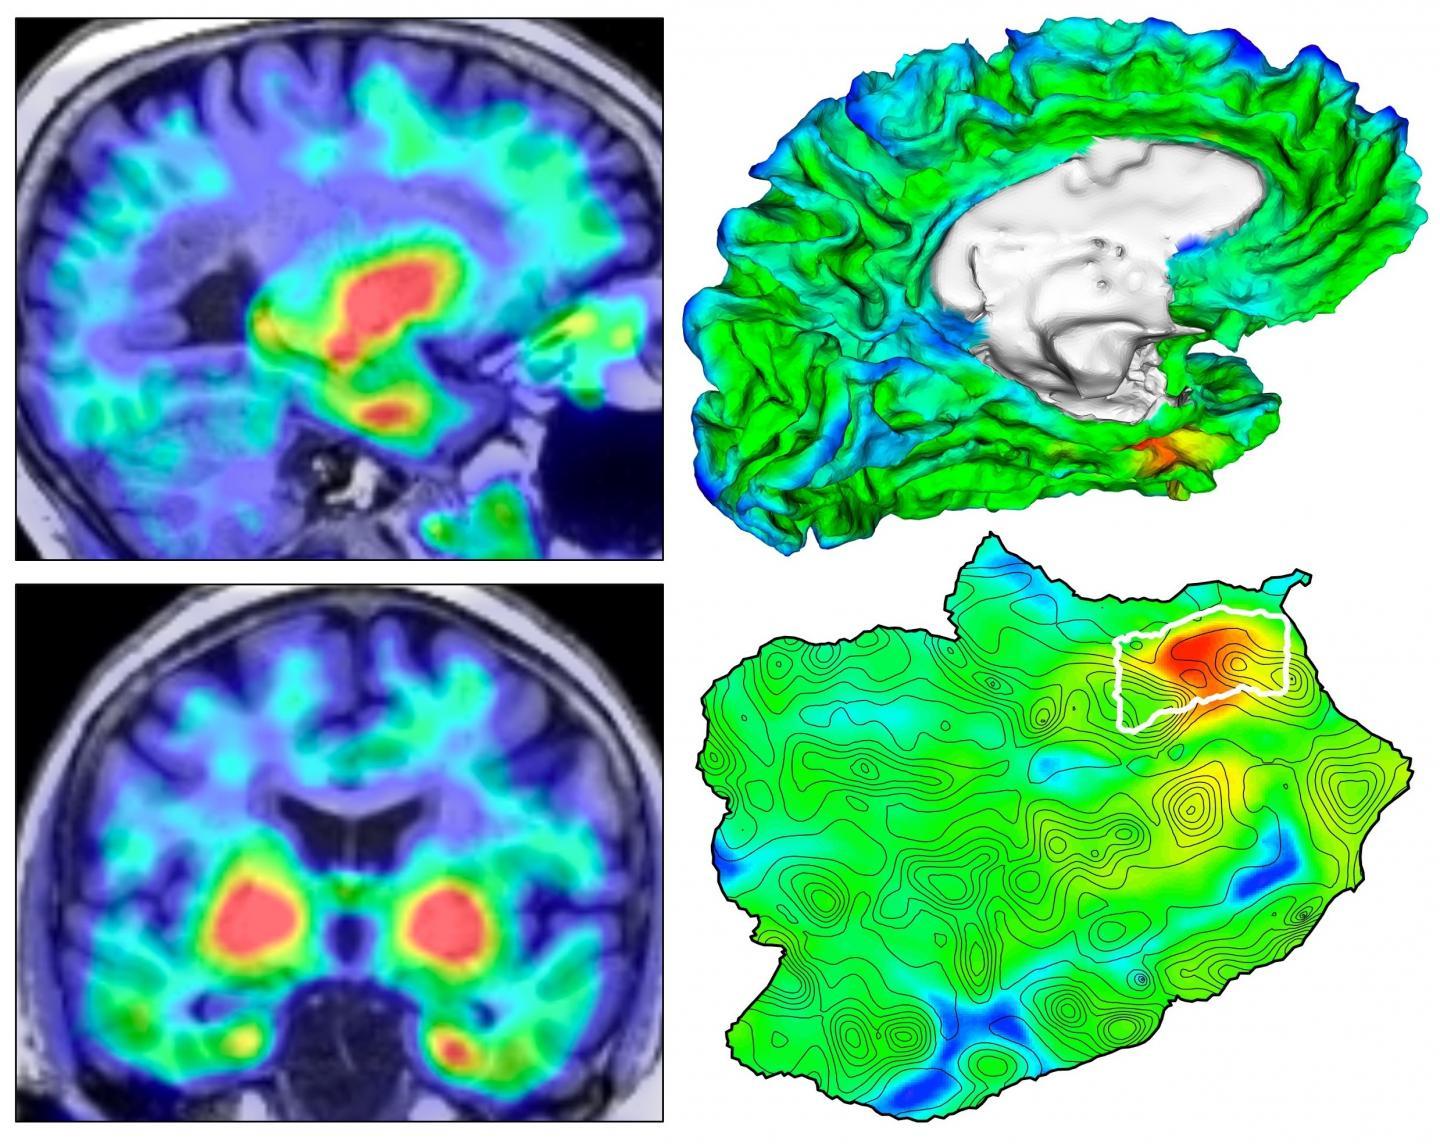 自动成像揭示了TAU蛋白起源于阿尔茨海默氏病脑中的位置